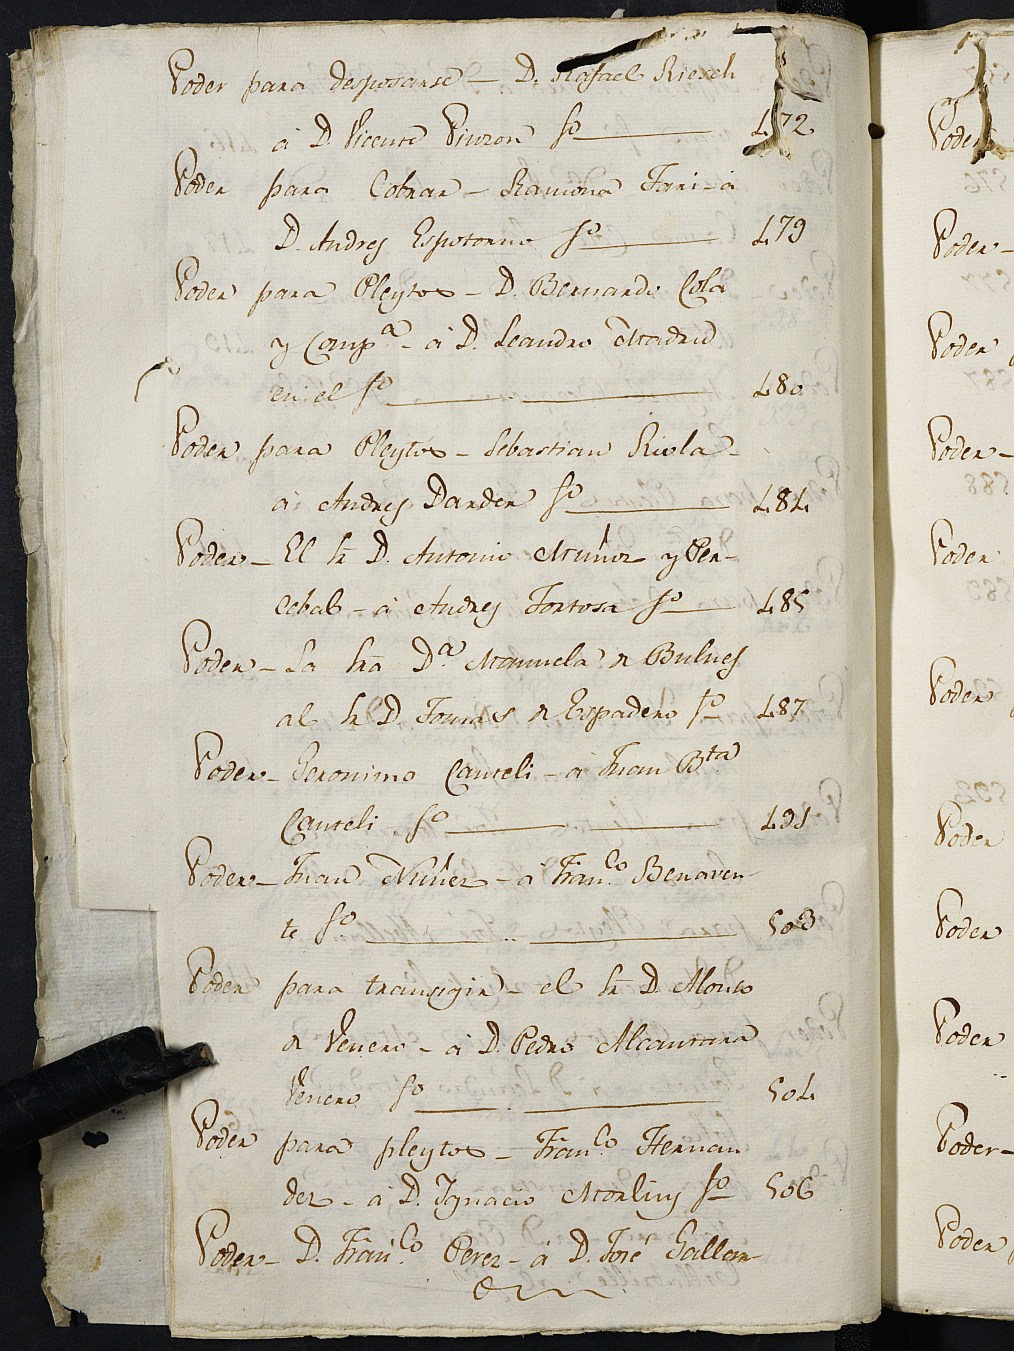 Registros de Agustín Carlos Roca, Cartagena: Escribano de Marina. Años 1804-1807.